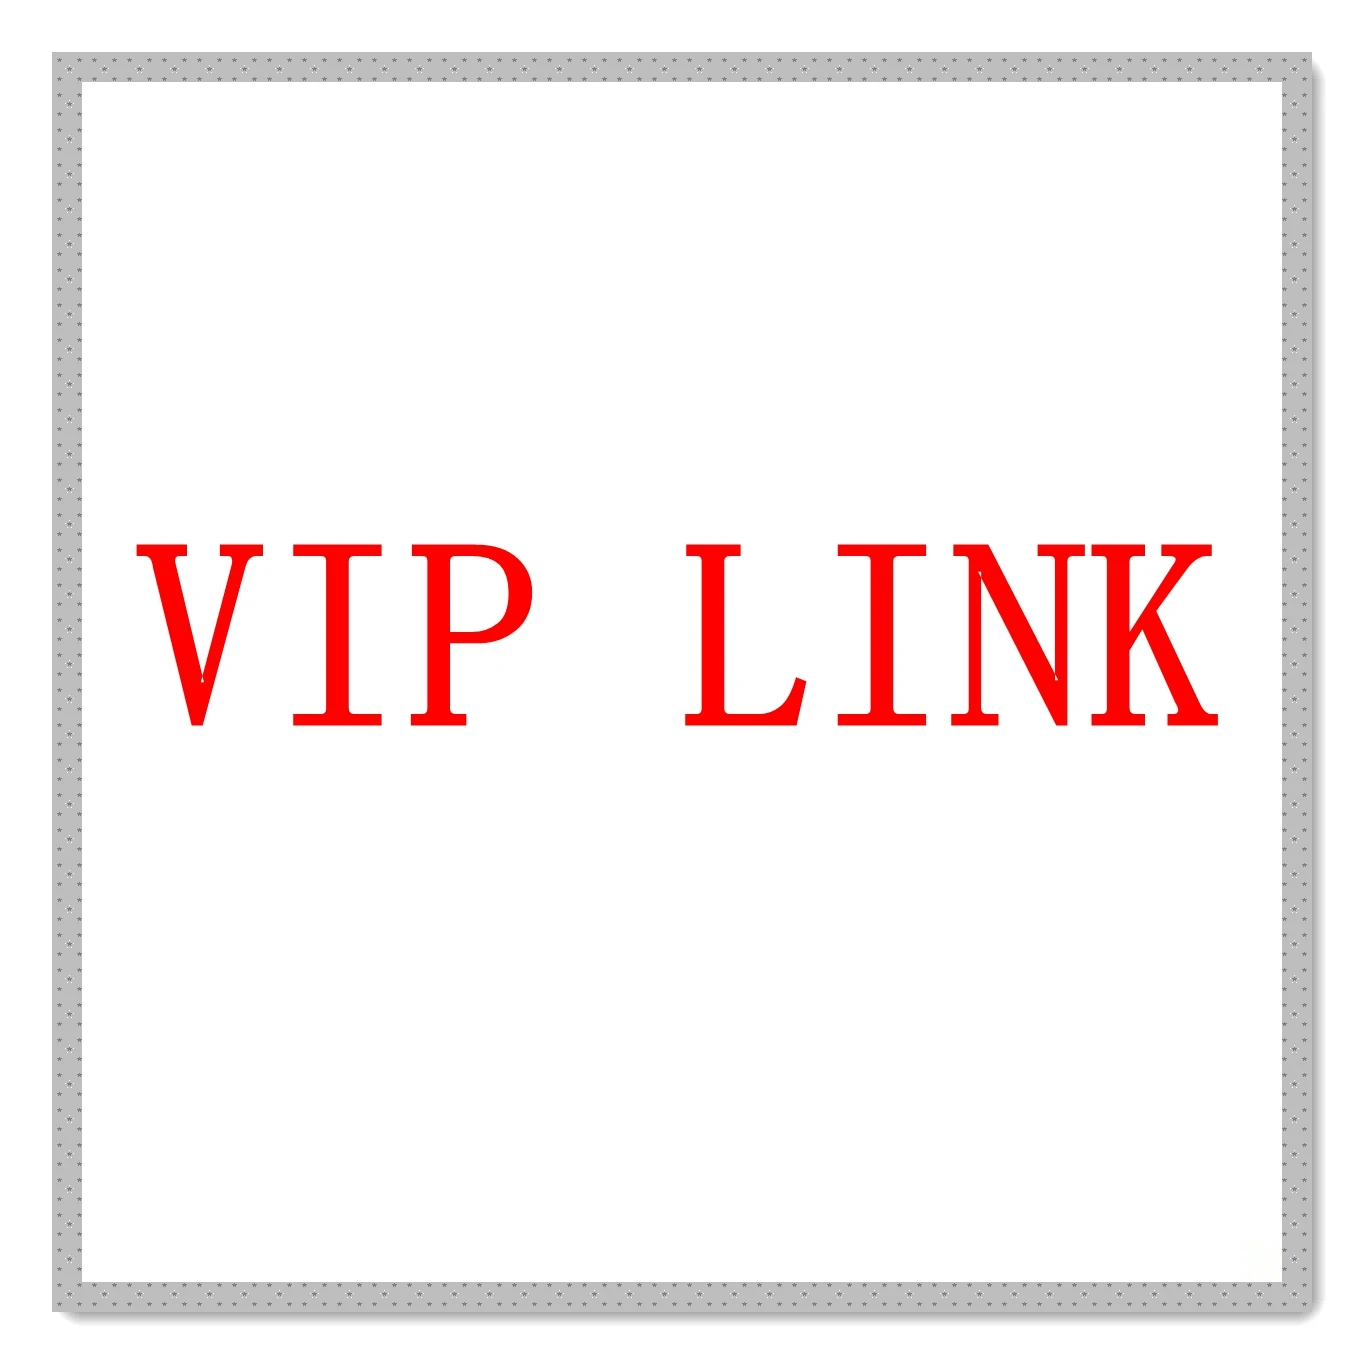 VIP LINK (купить могут только клиенты, с которыми свяжется продавец) 0